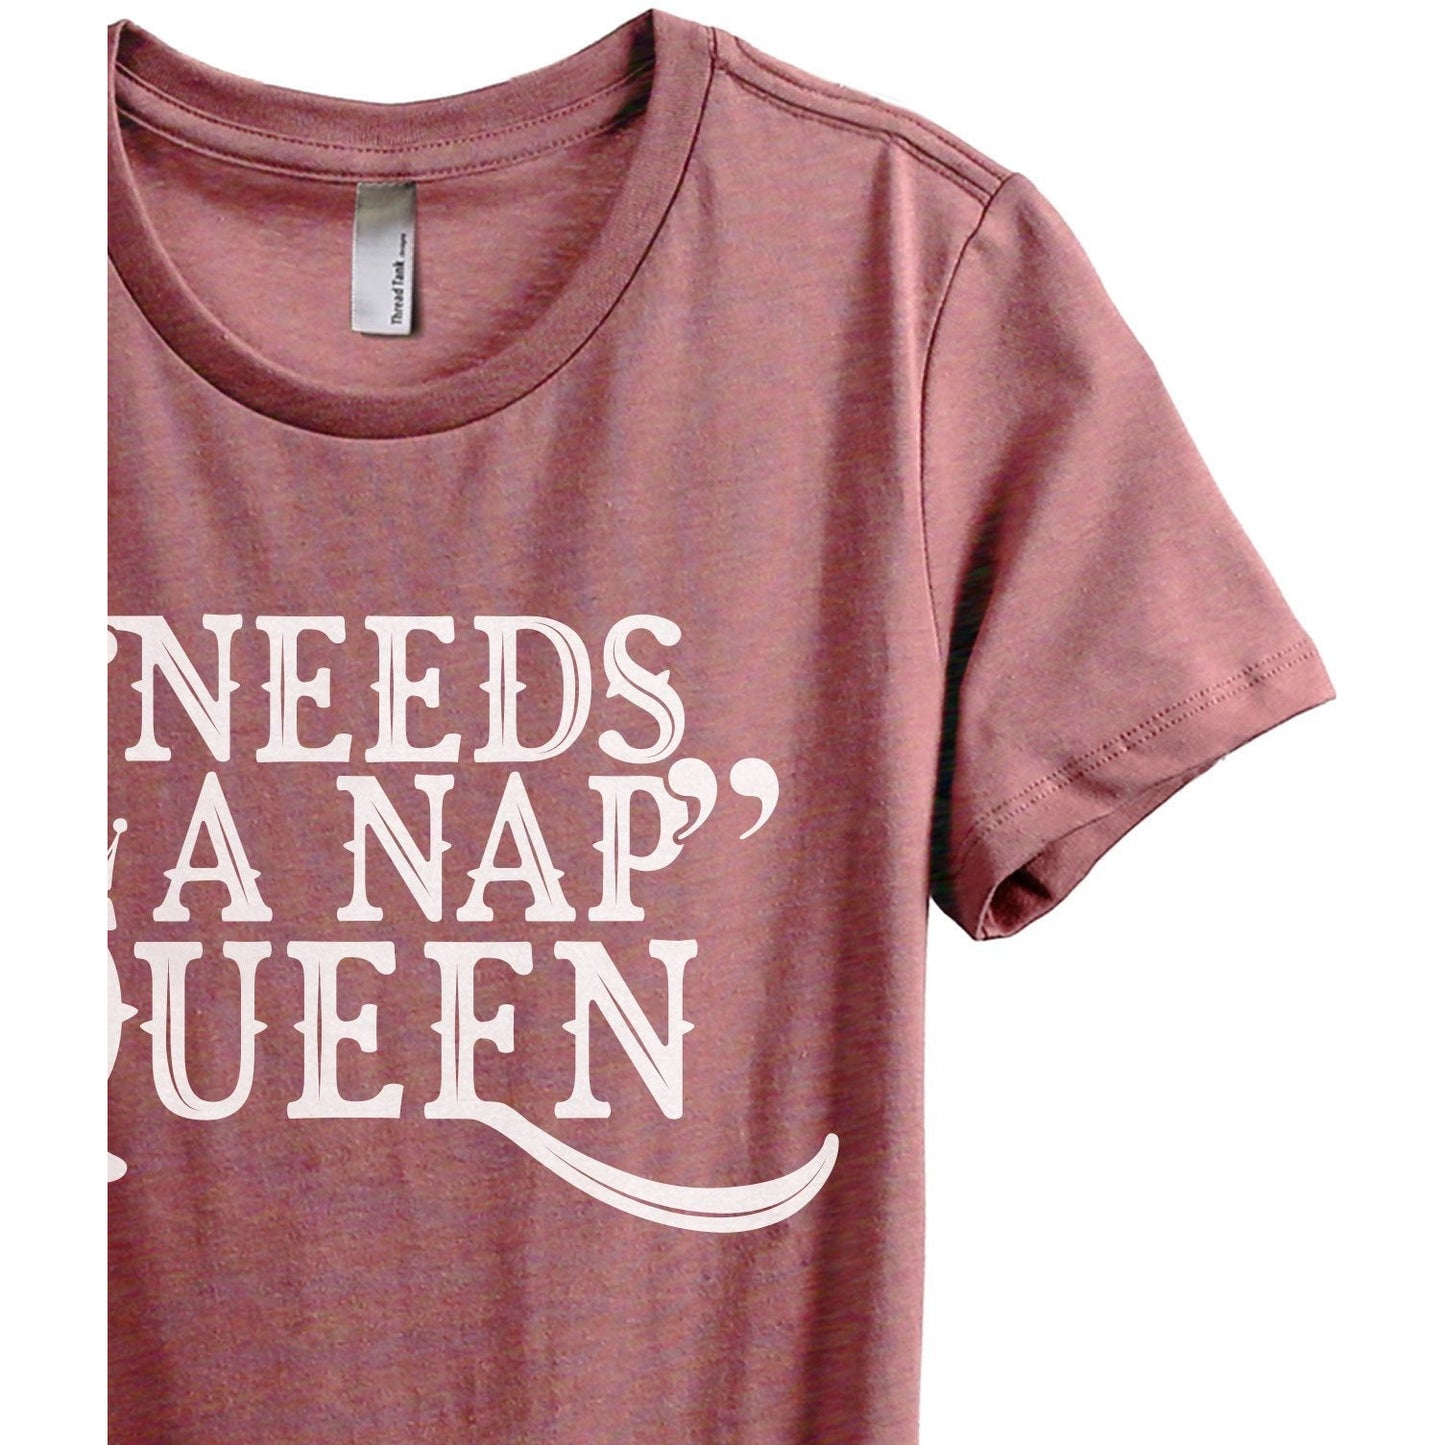 Needs A Nap Queen Women's Relaxed Crew T-Shirt Heather Rouge Shirt Image Closeup Details